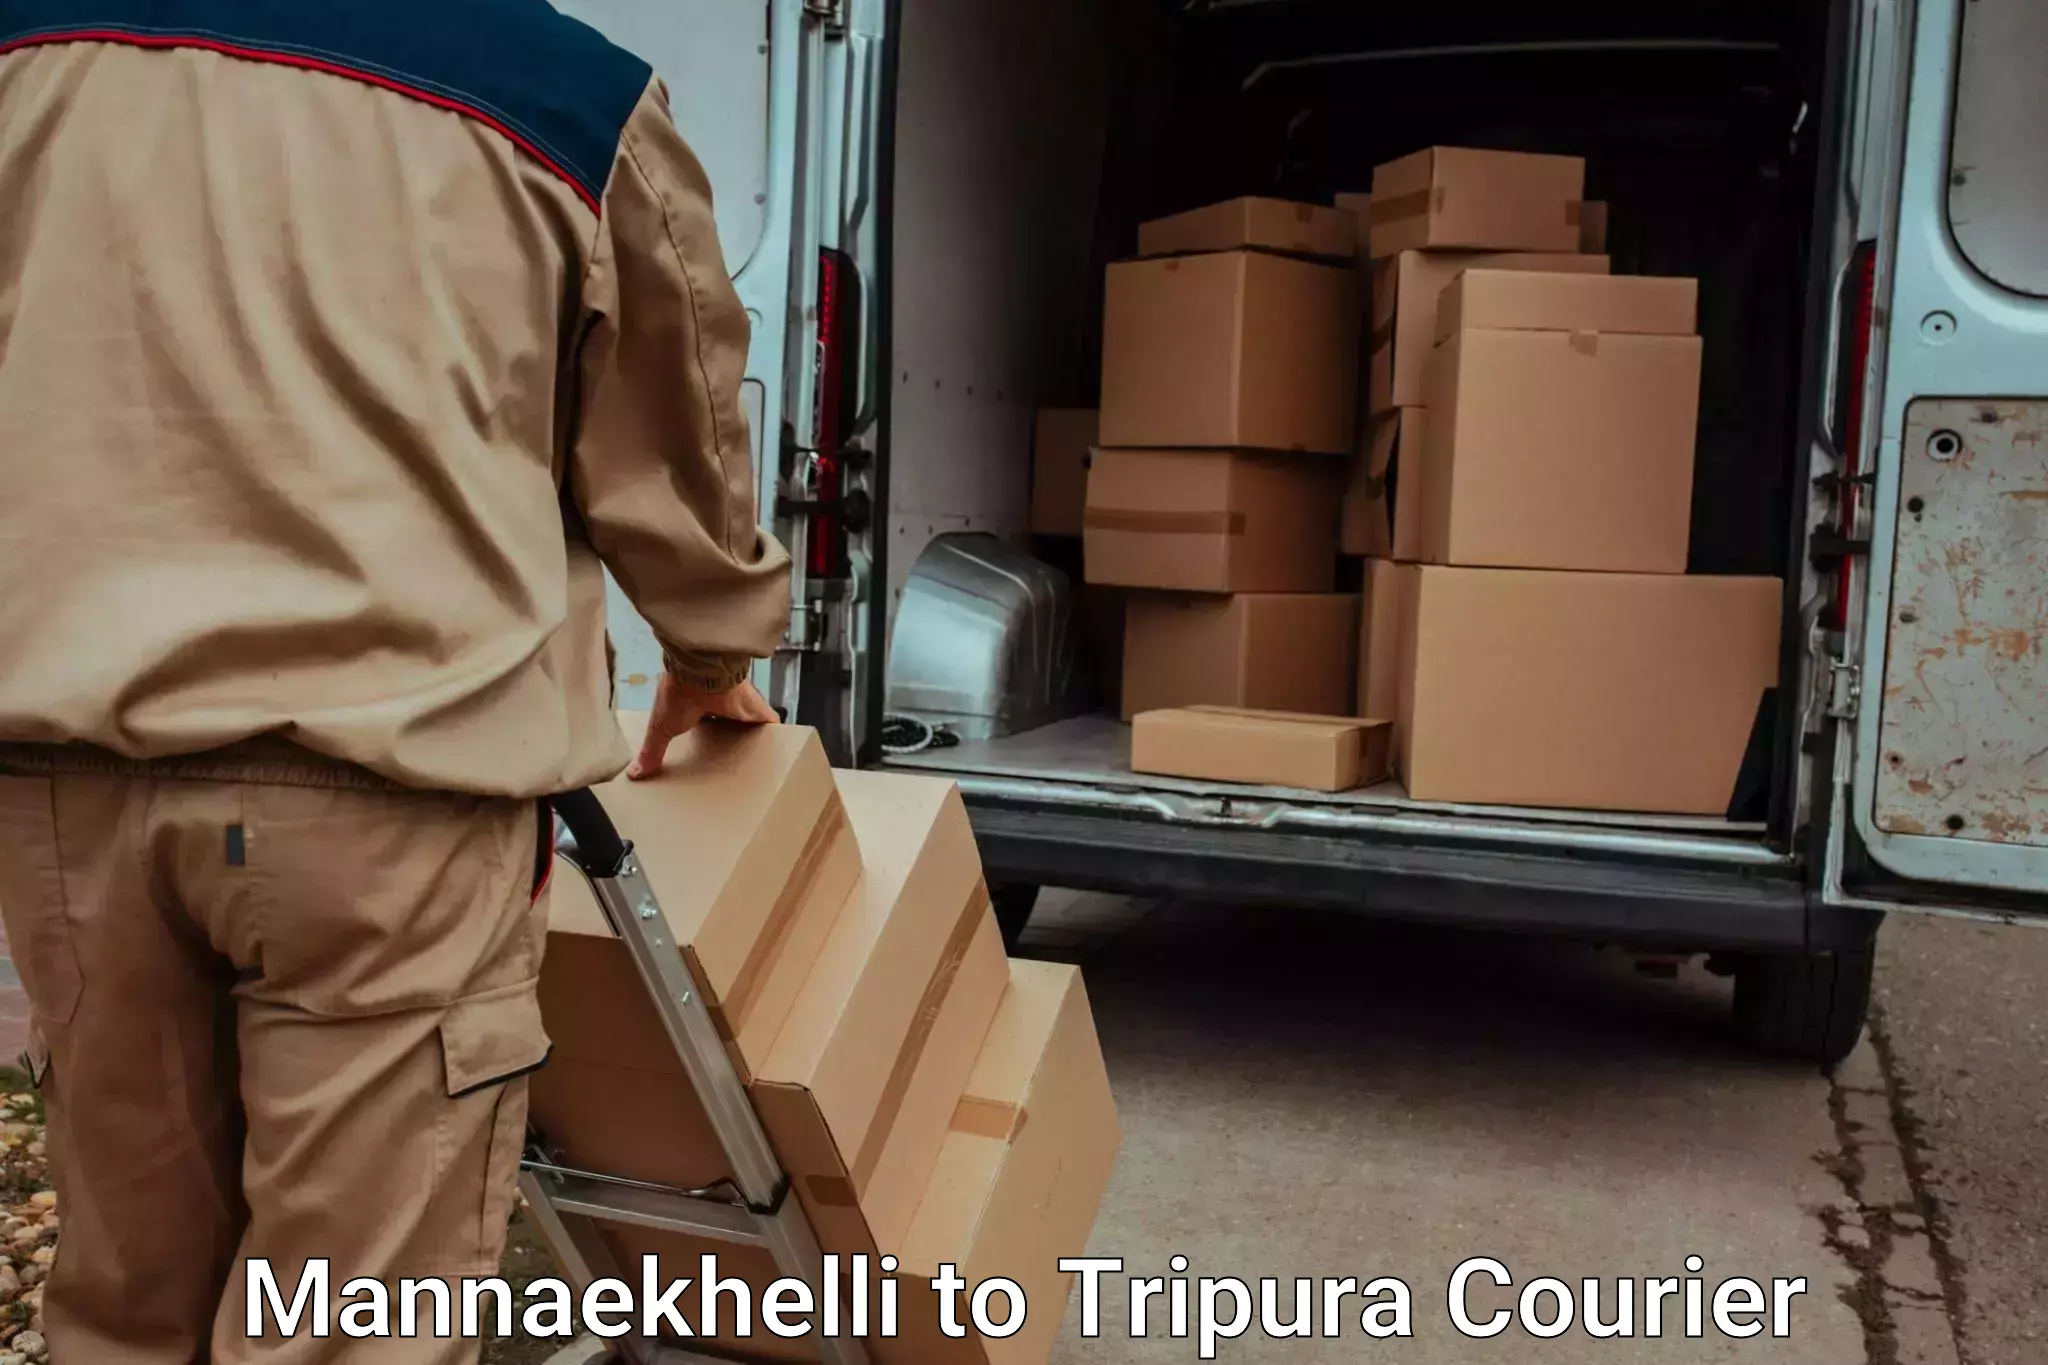 Luggage transport guidelines Mannaekhelli to Aambasa